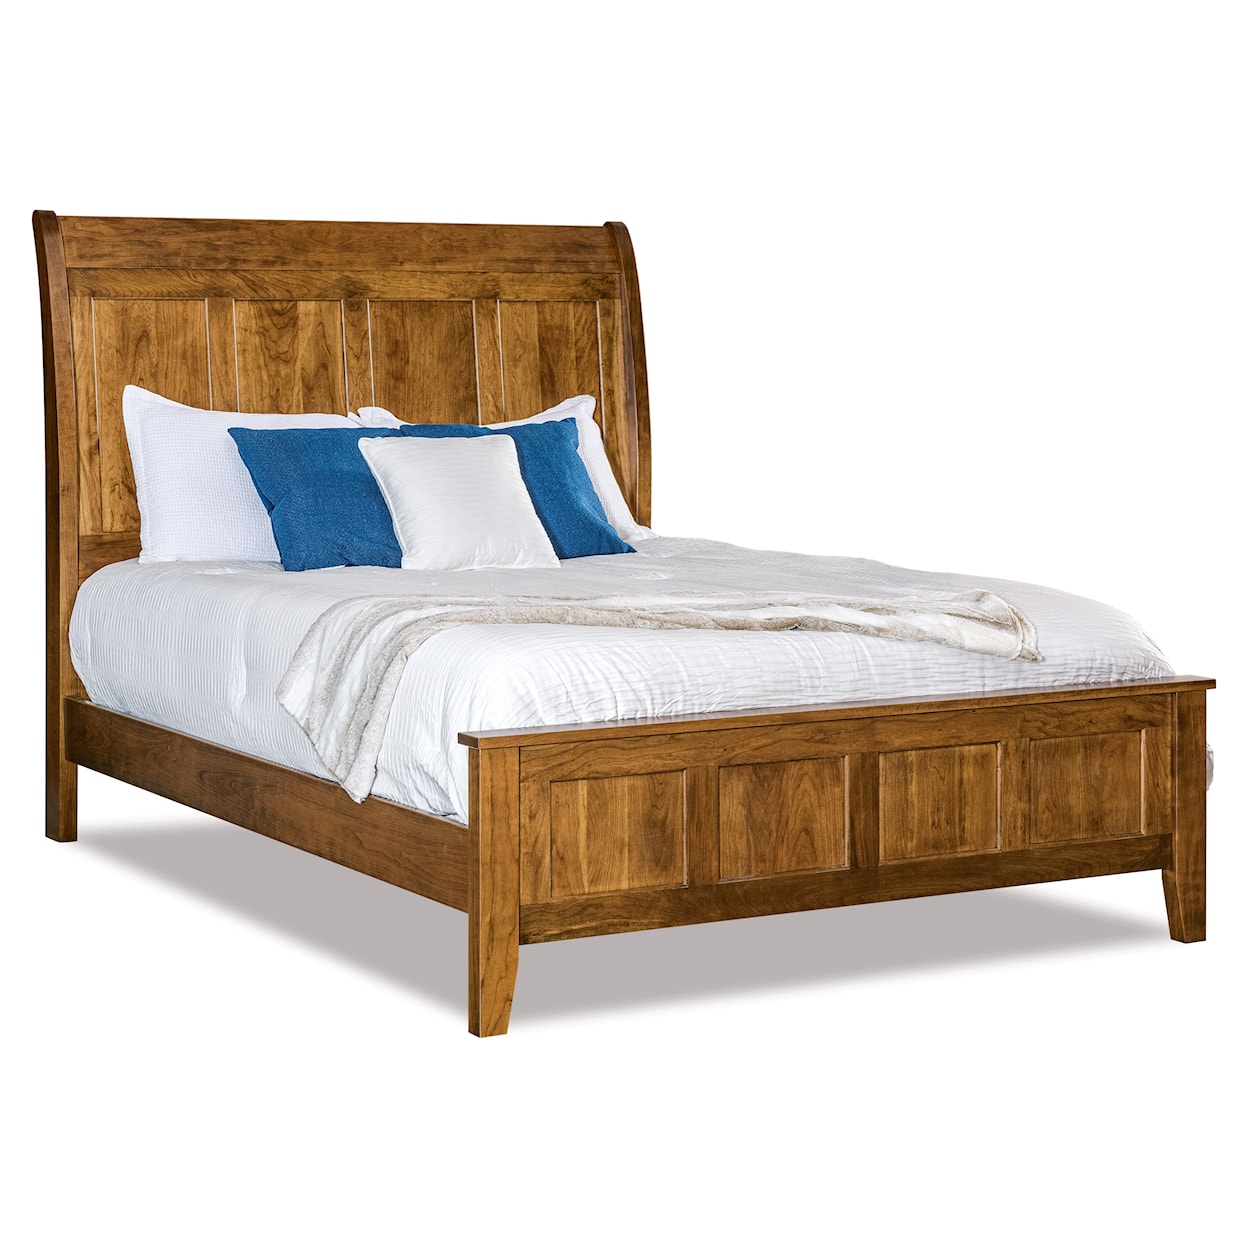 Archbold Furniture Bob Timberlake King Sleigh Panel Bed